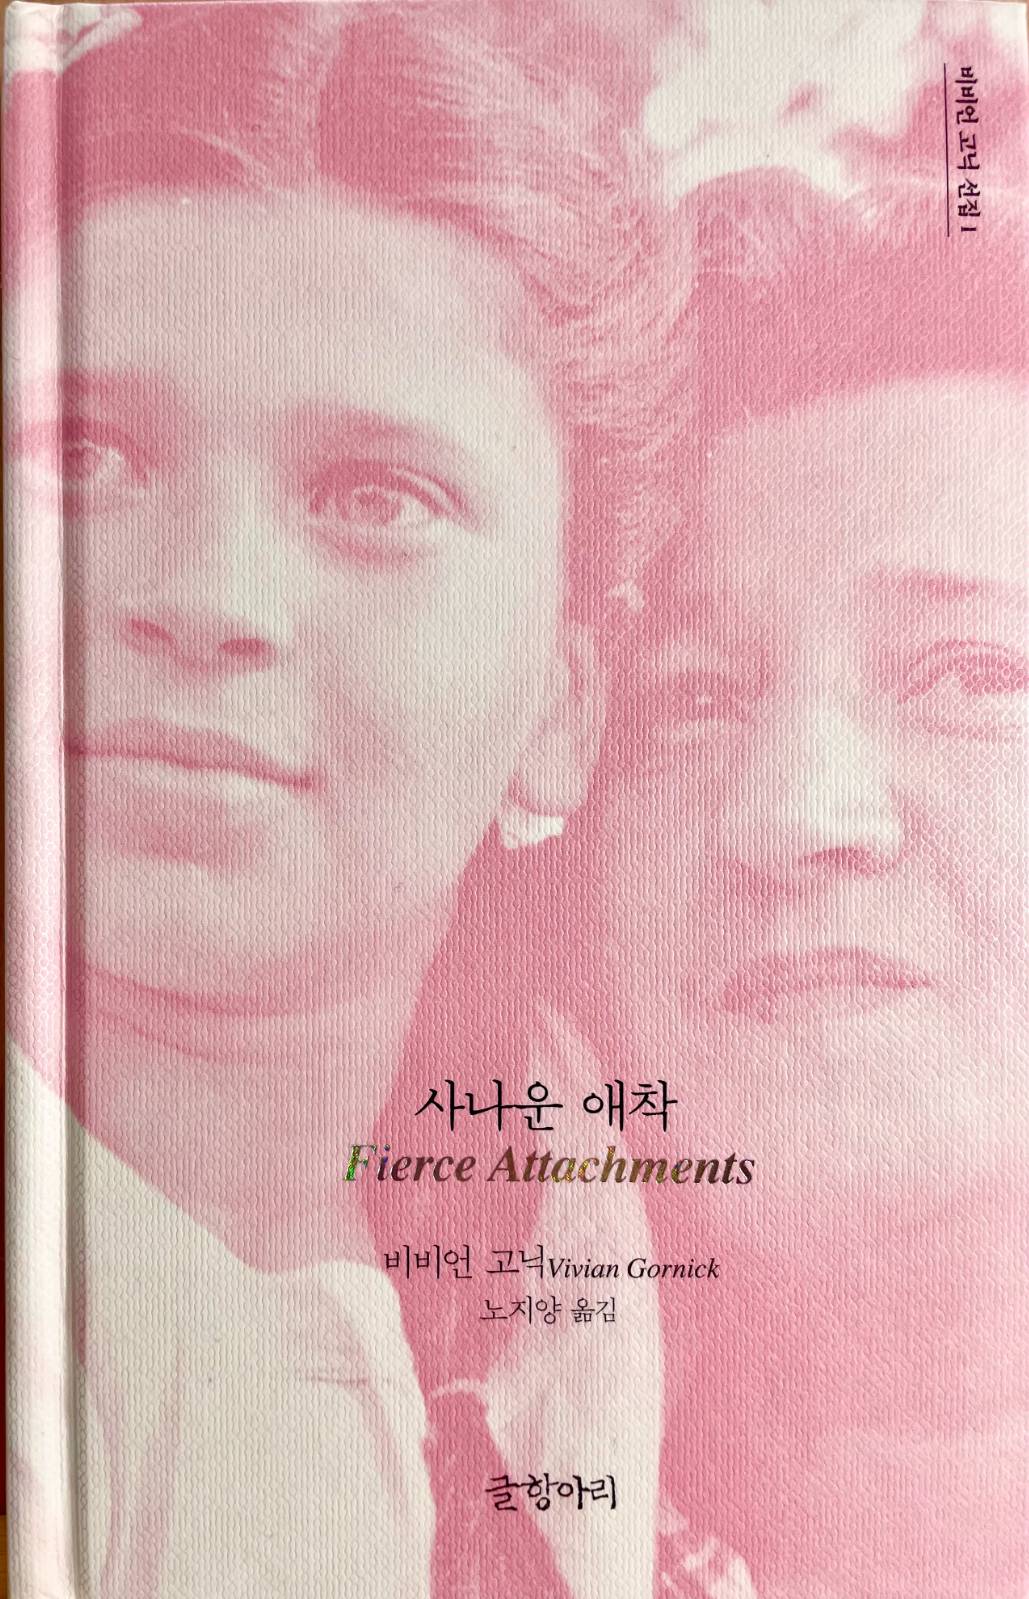 비비언 고닉, 『사나운 애착』, 노지양 옮김, 글항아리, 2021.